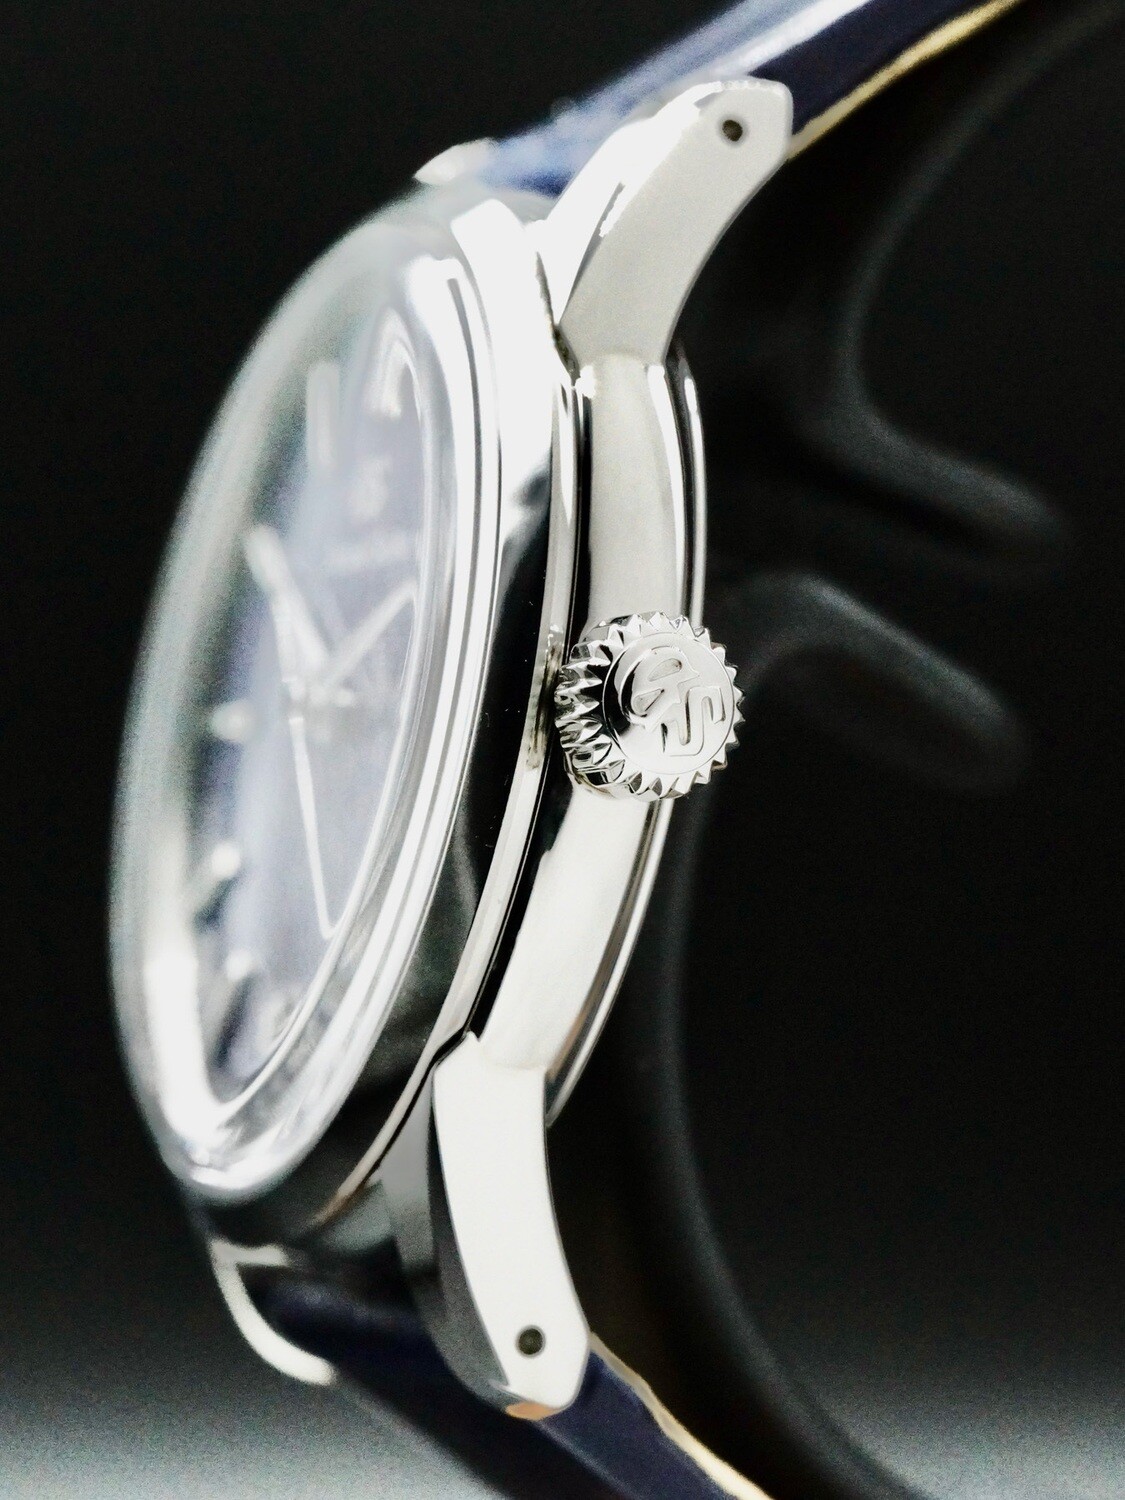 Grand Seiko Elegance SBGX349 - Exquisite Timepieces